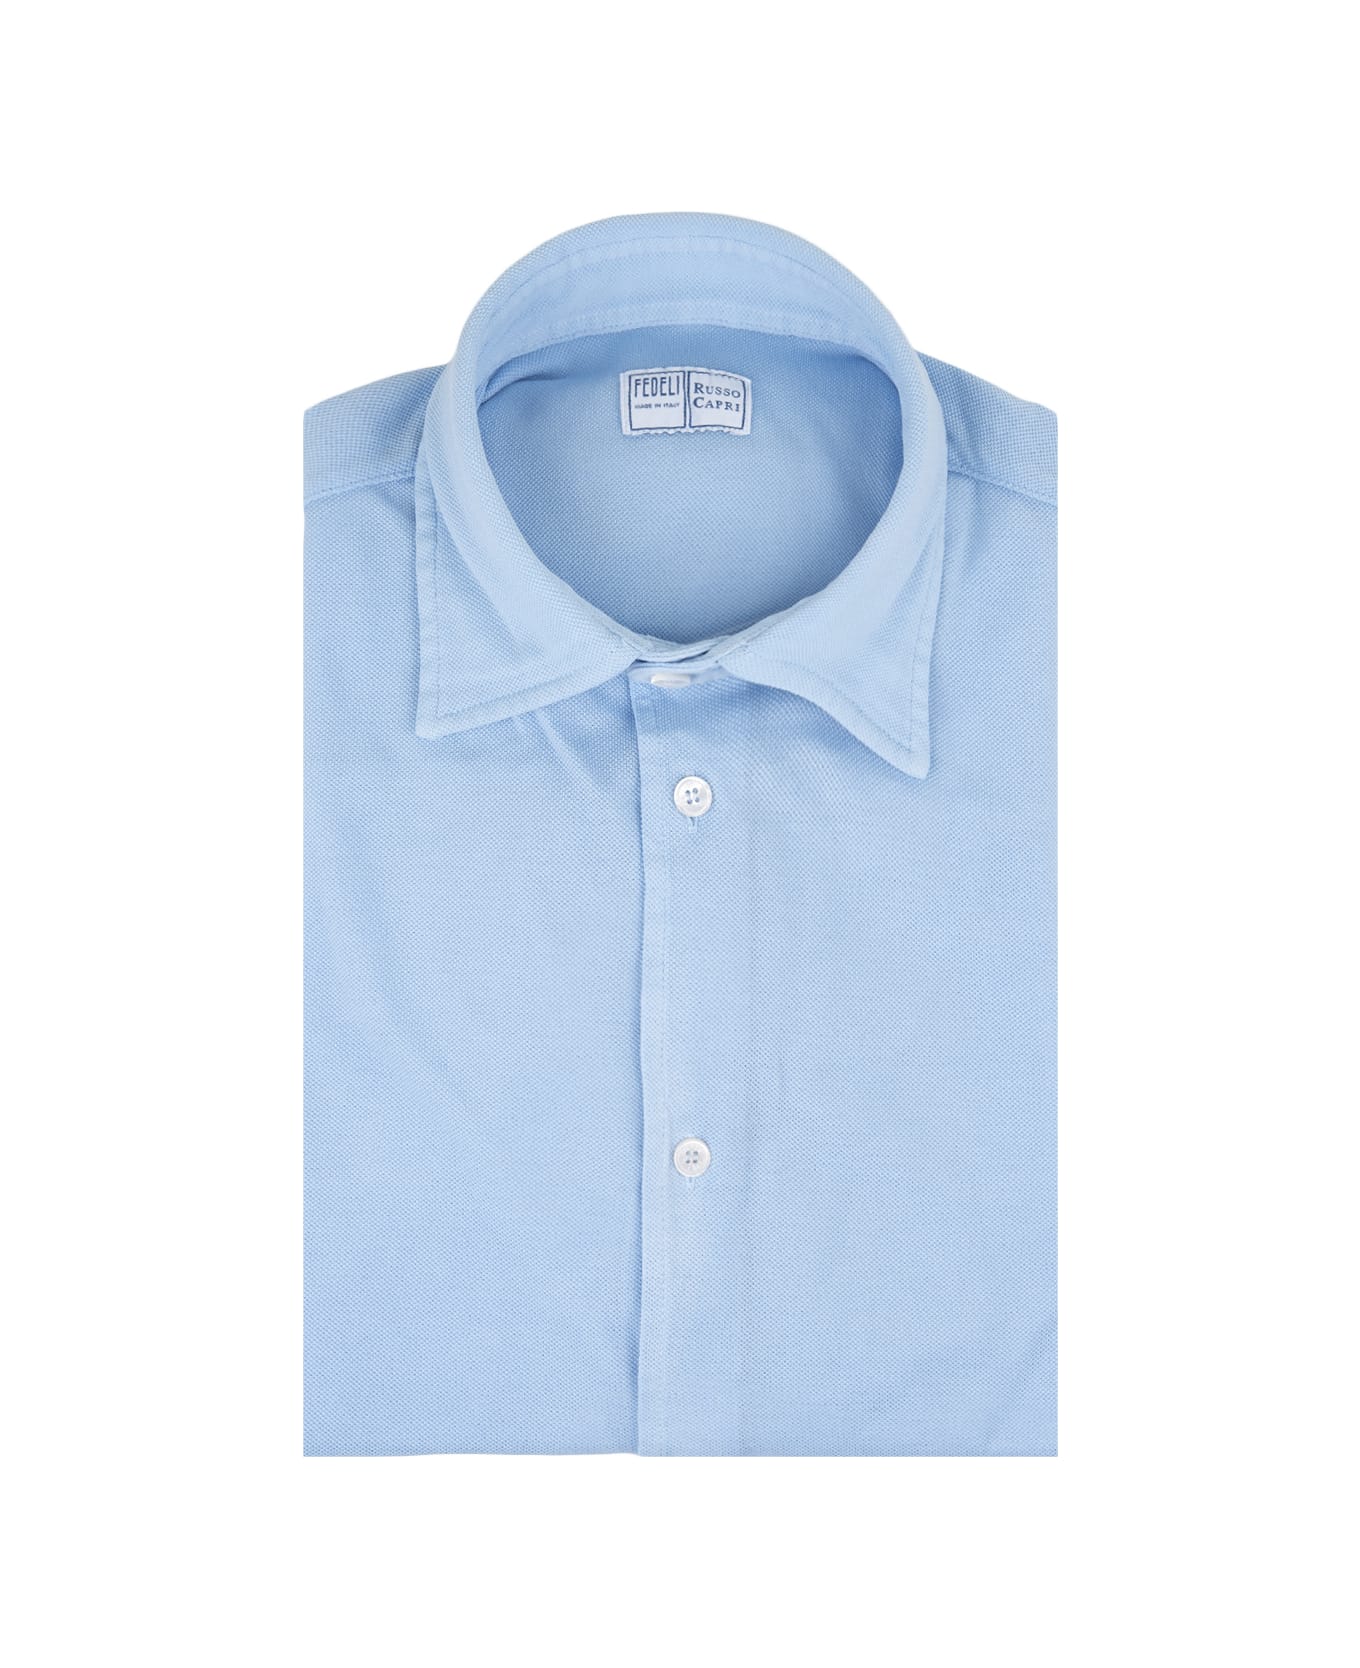 Fedeli Shirt In Light Blue Cotton Piqué - Blue